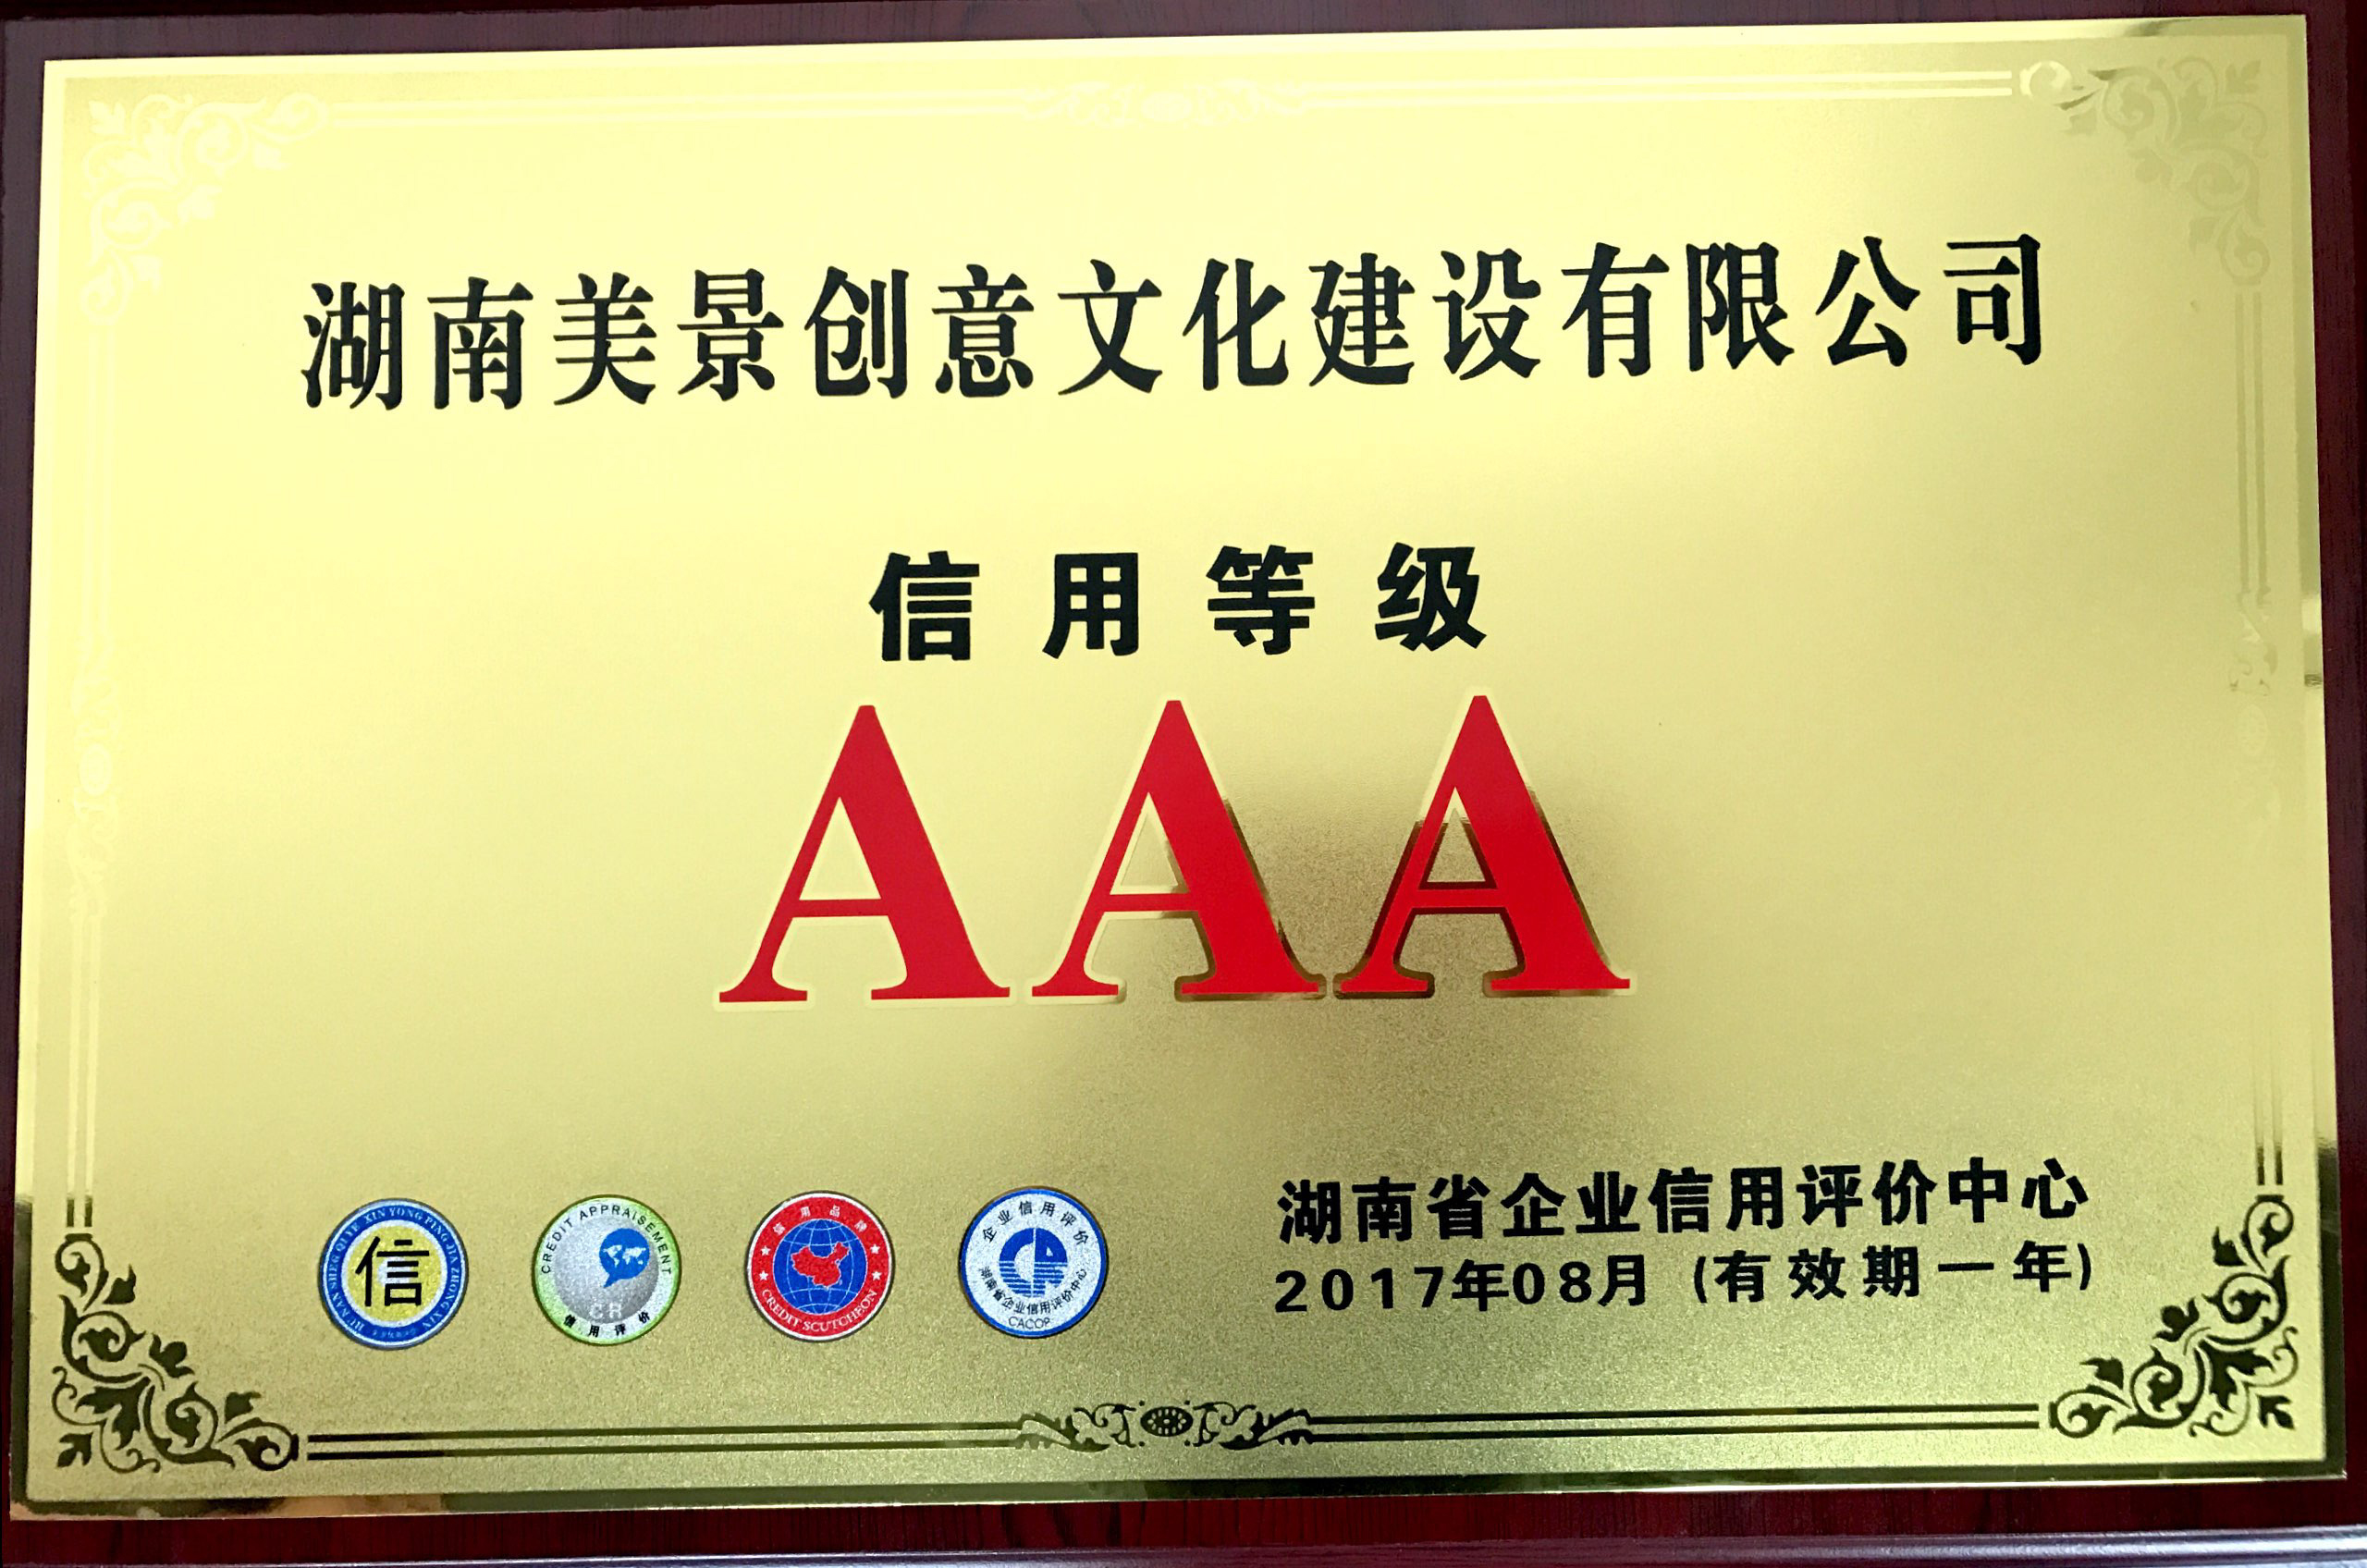 【美景新闻】美景创意荣获AAA级信用等级证书